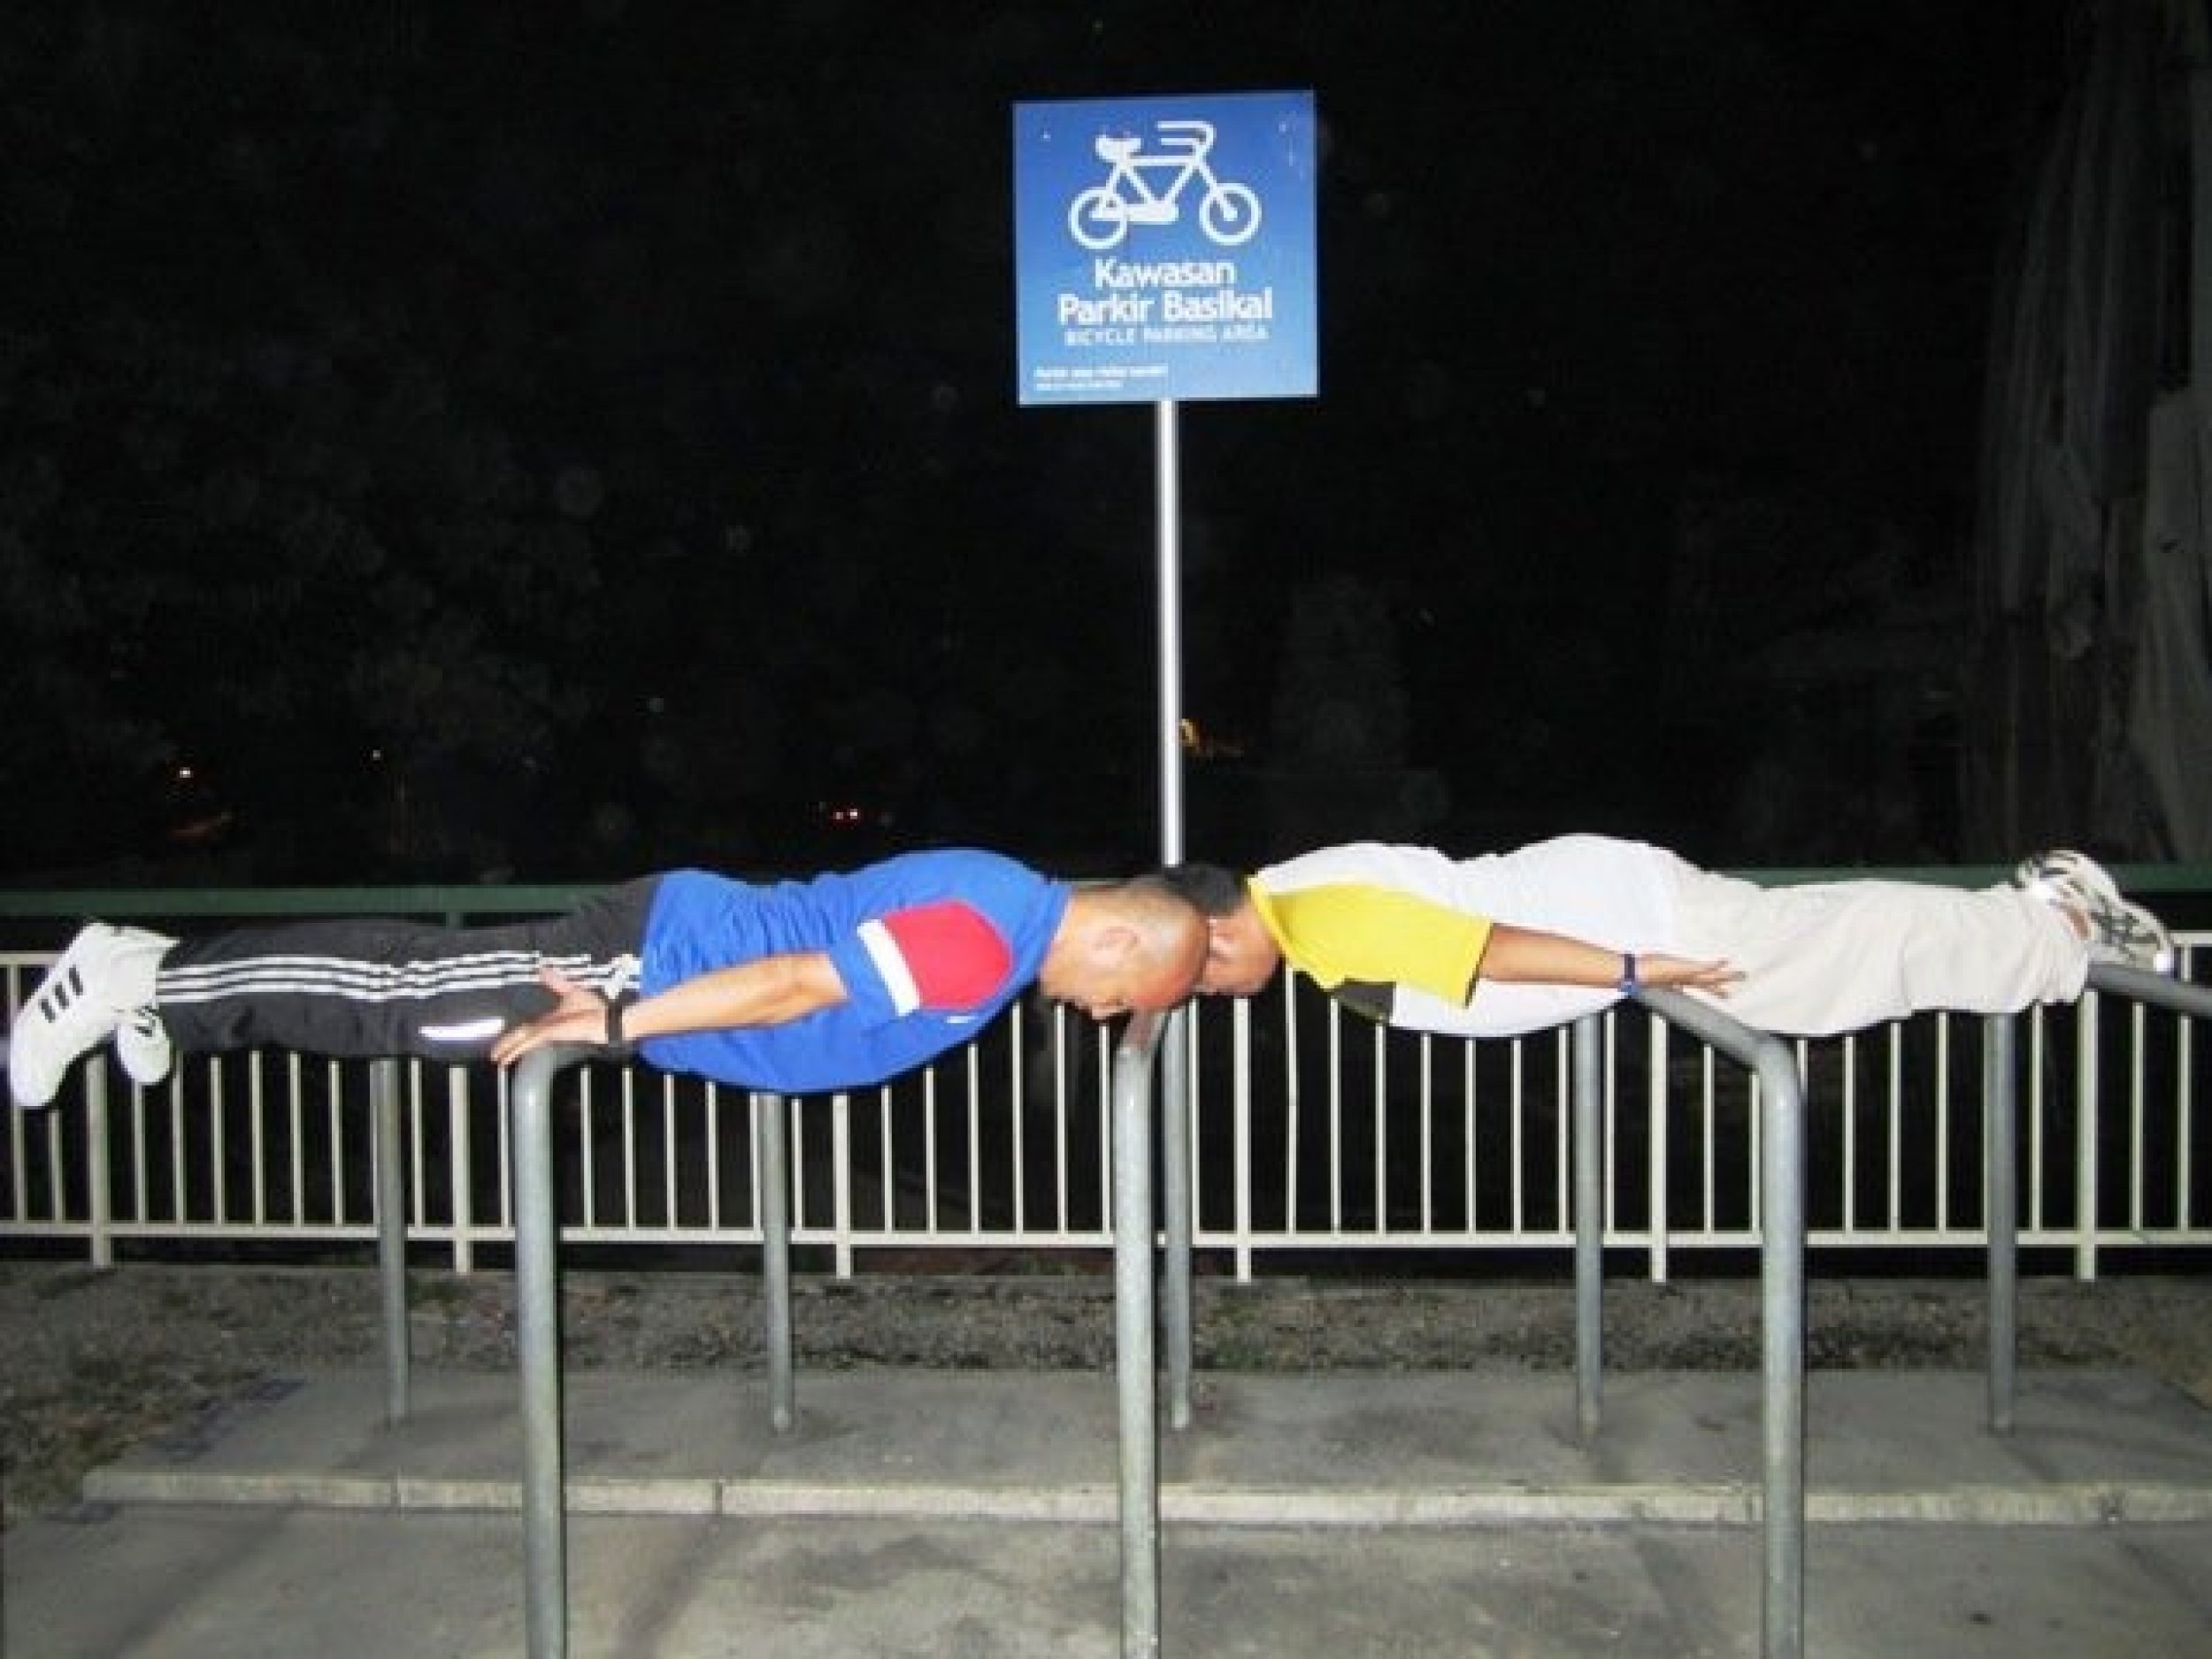 planking